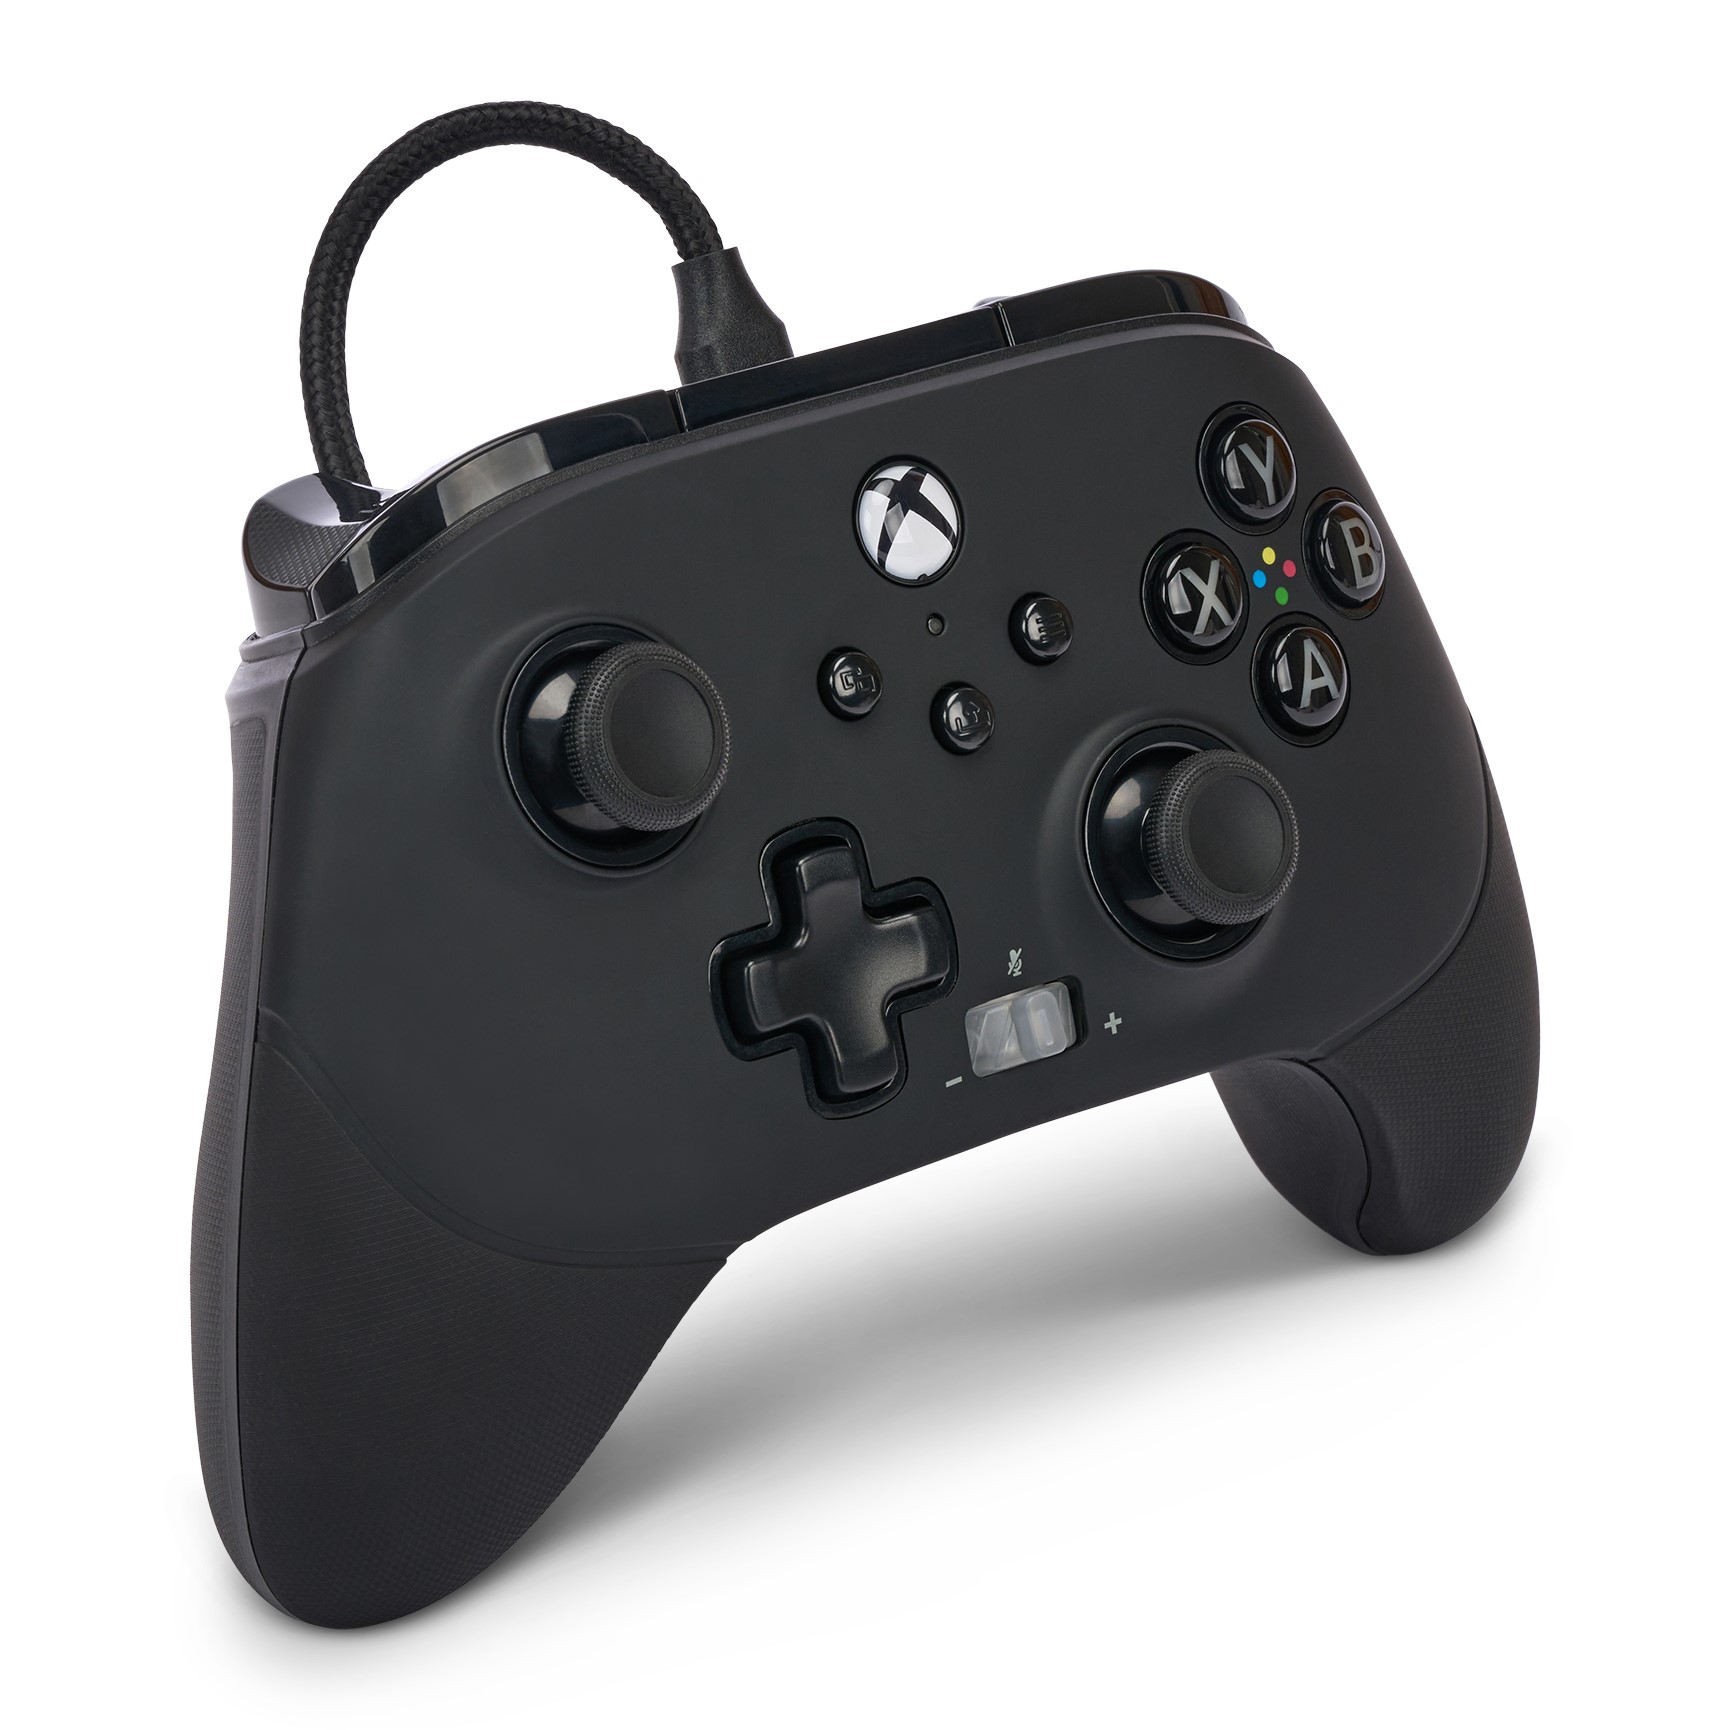 Imagem do controle com fio PowerA FUSION Pro 3 para Xbox.